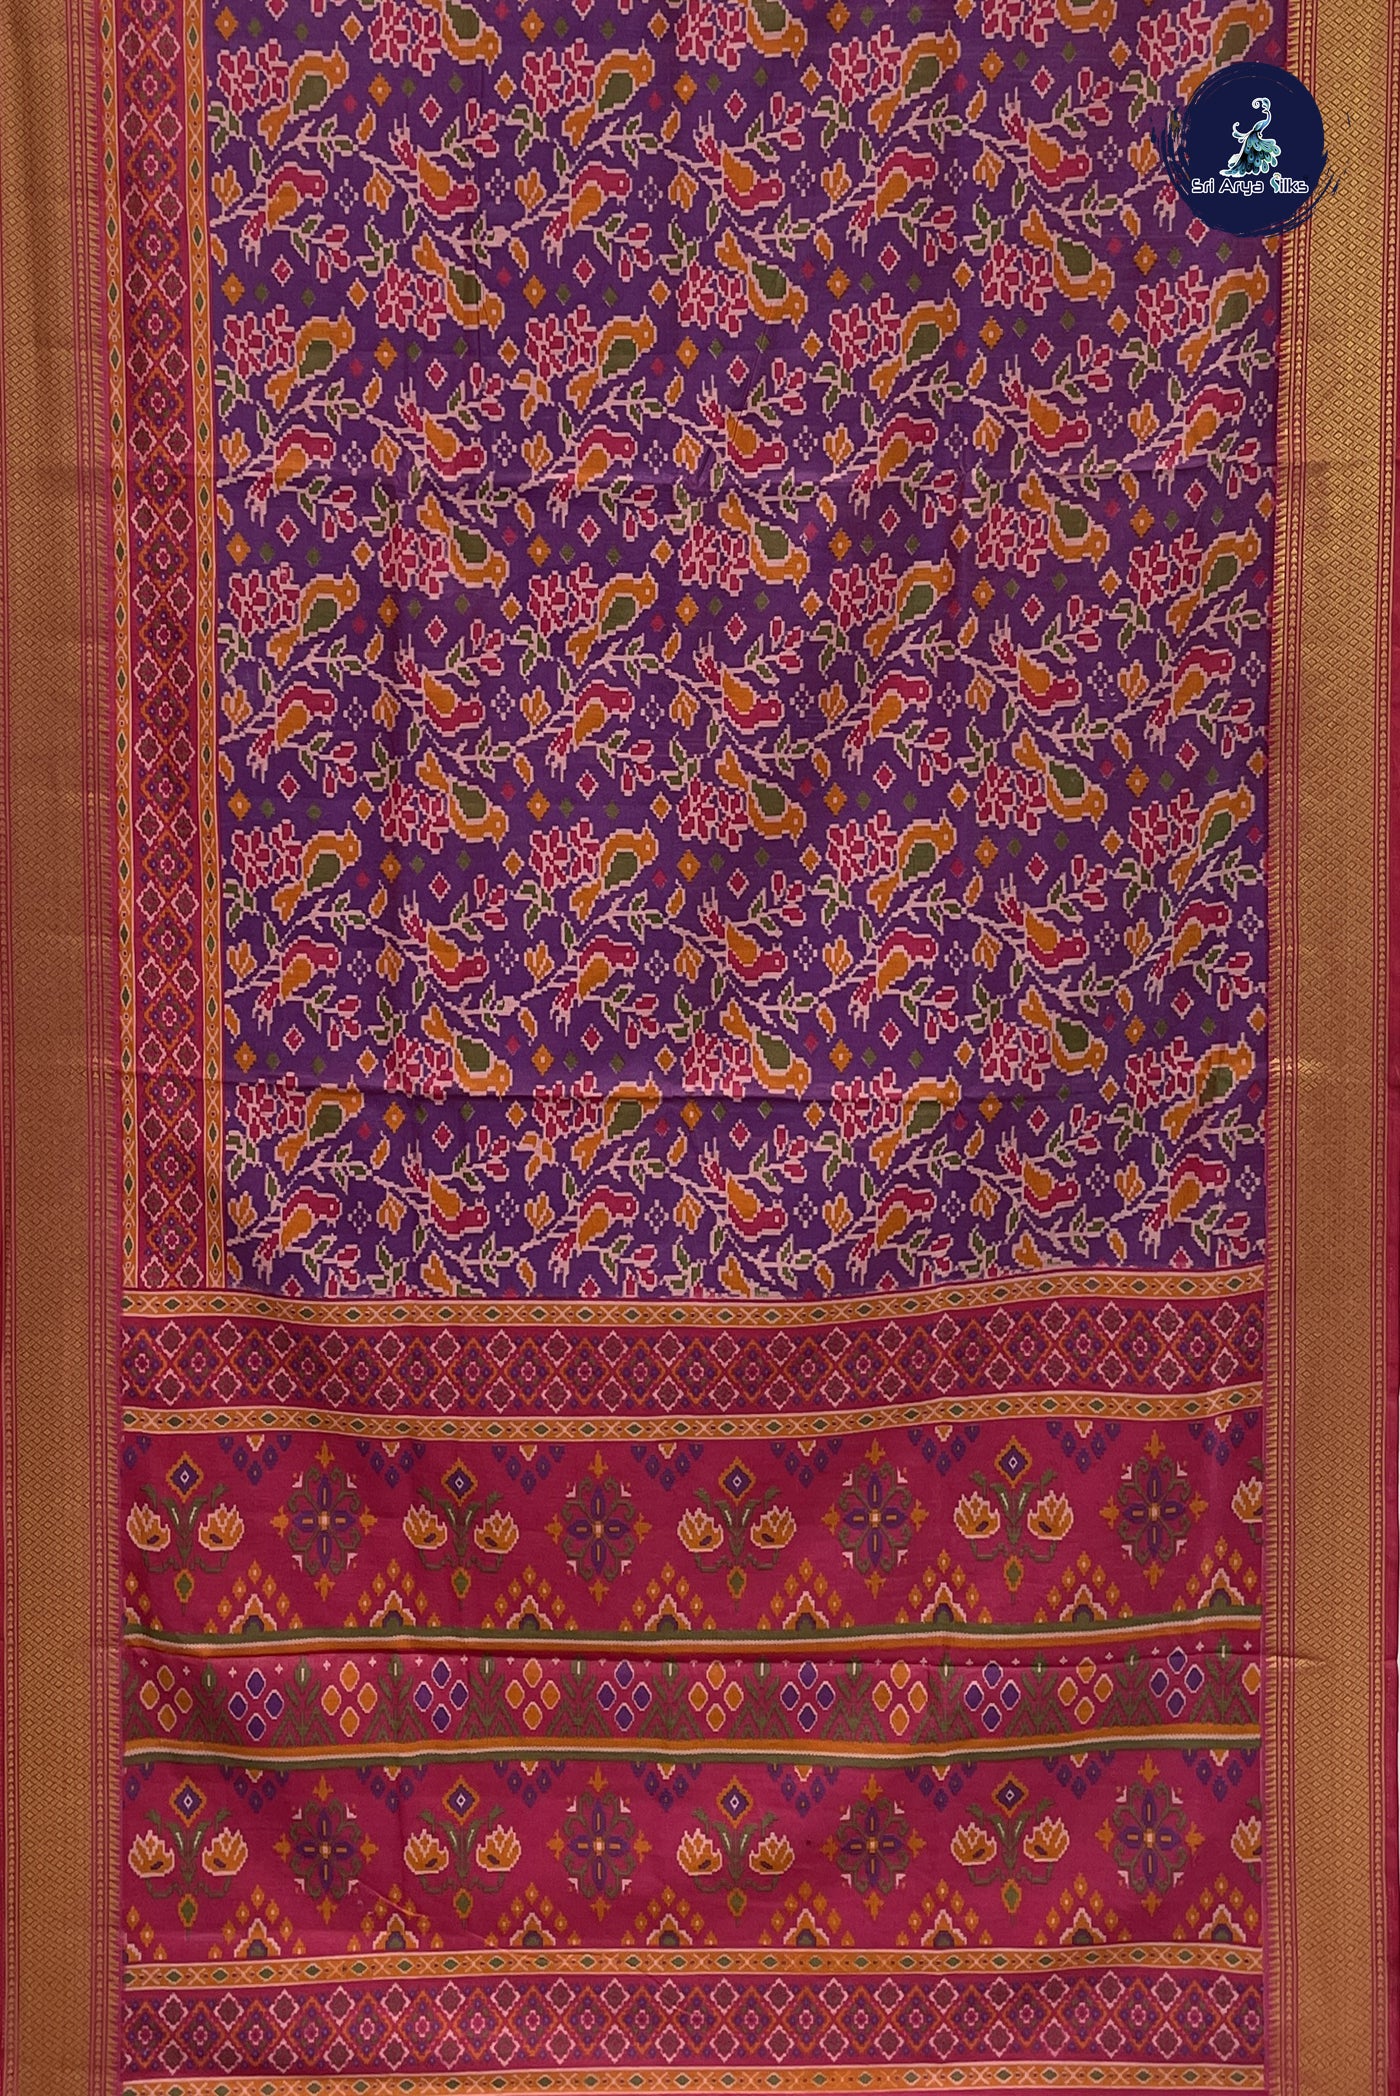 Dual Tone Purple Semi Pattola Saree With Patola Pattern